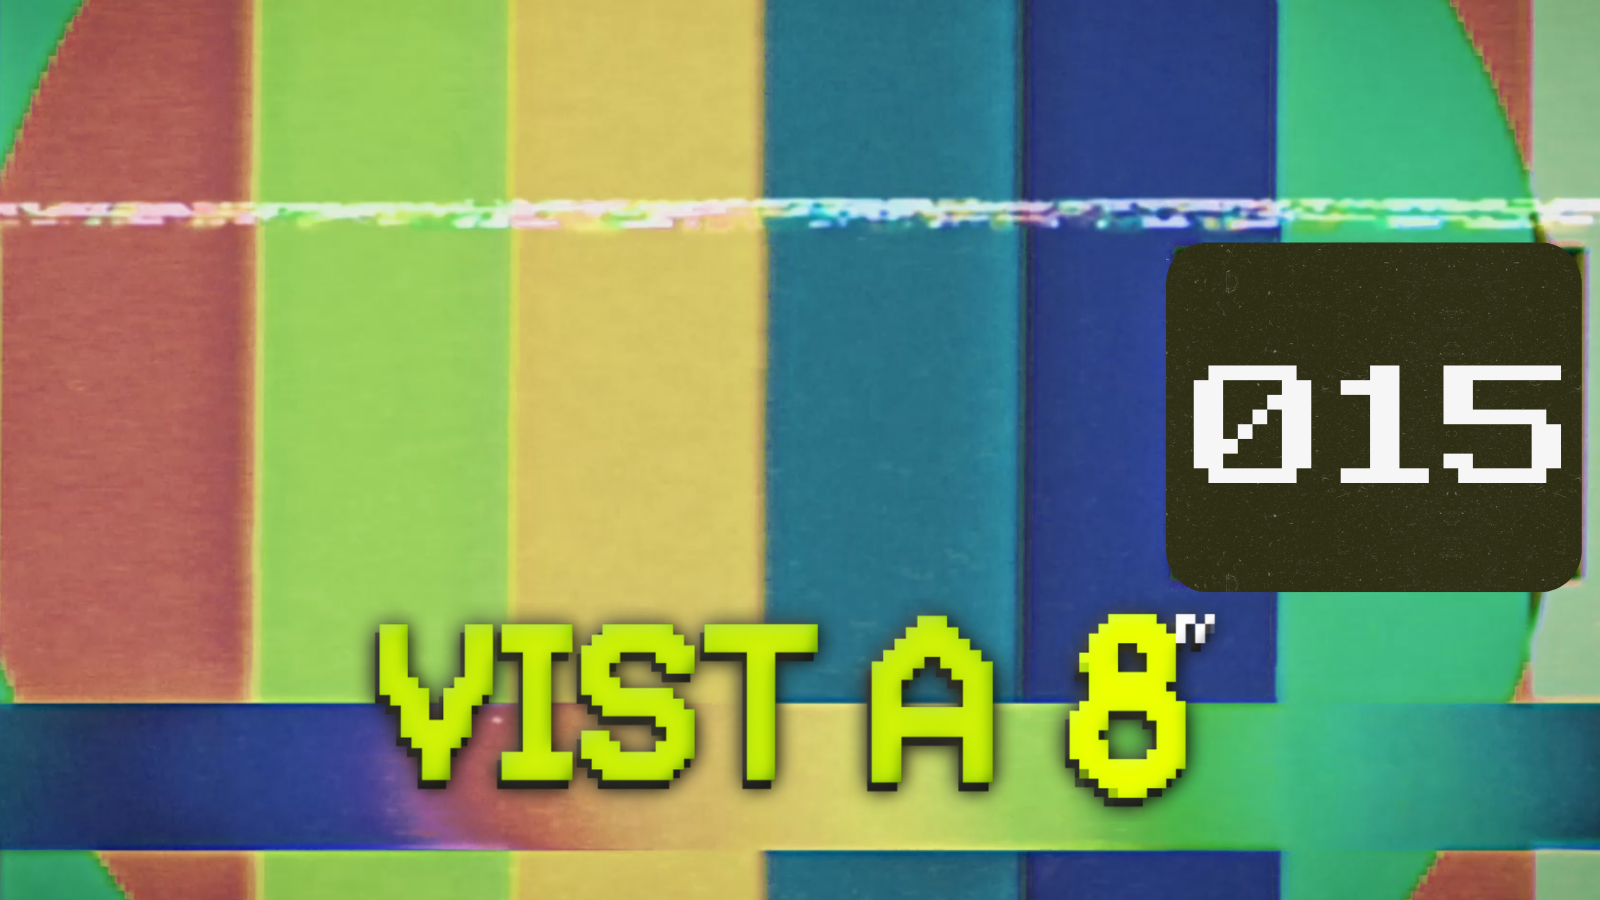 VIST A 8TV - EPISODI 15